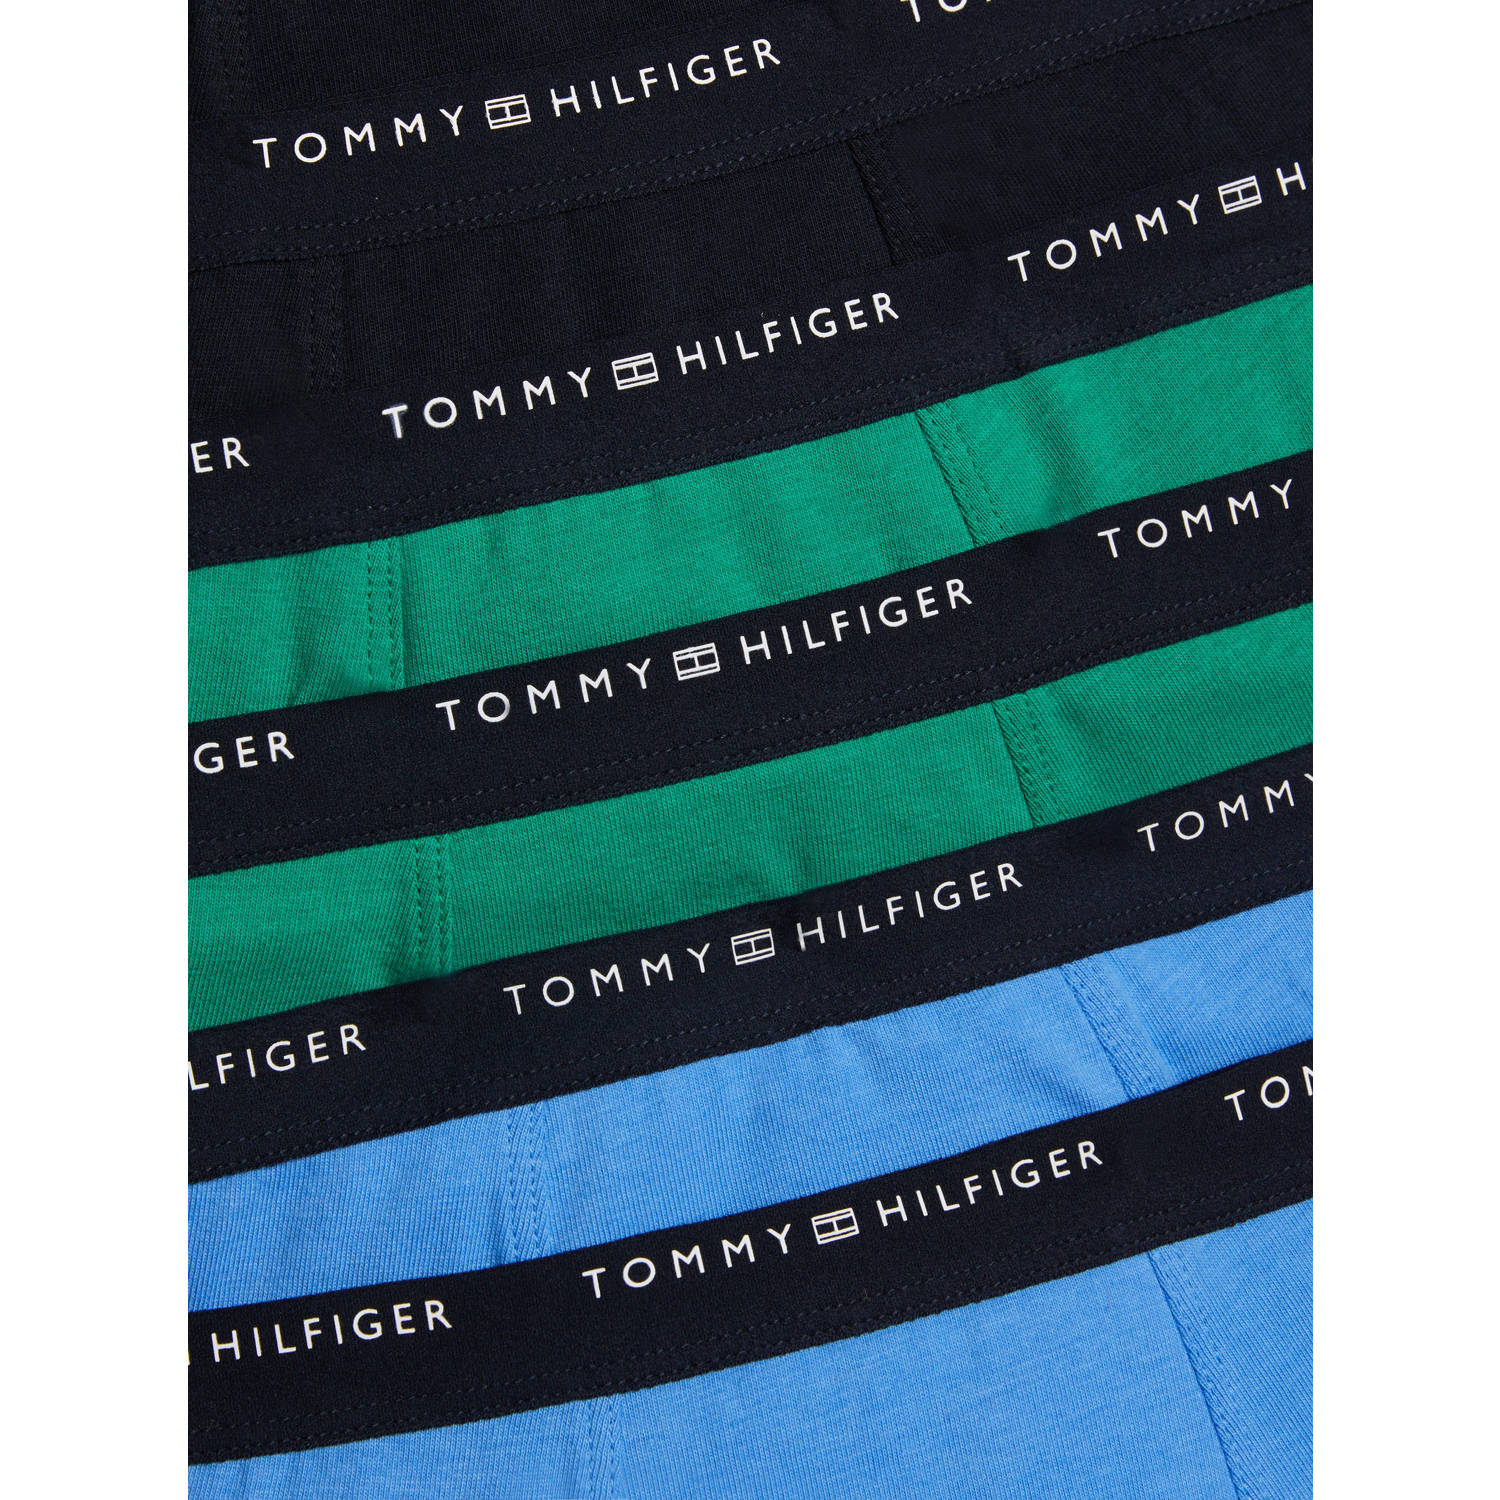 Tommy Hilfiger boxershort set van 7 blauw groen zwart